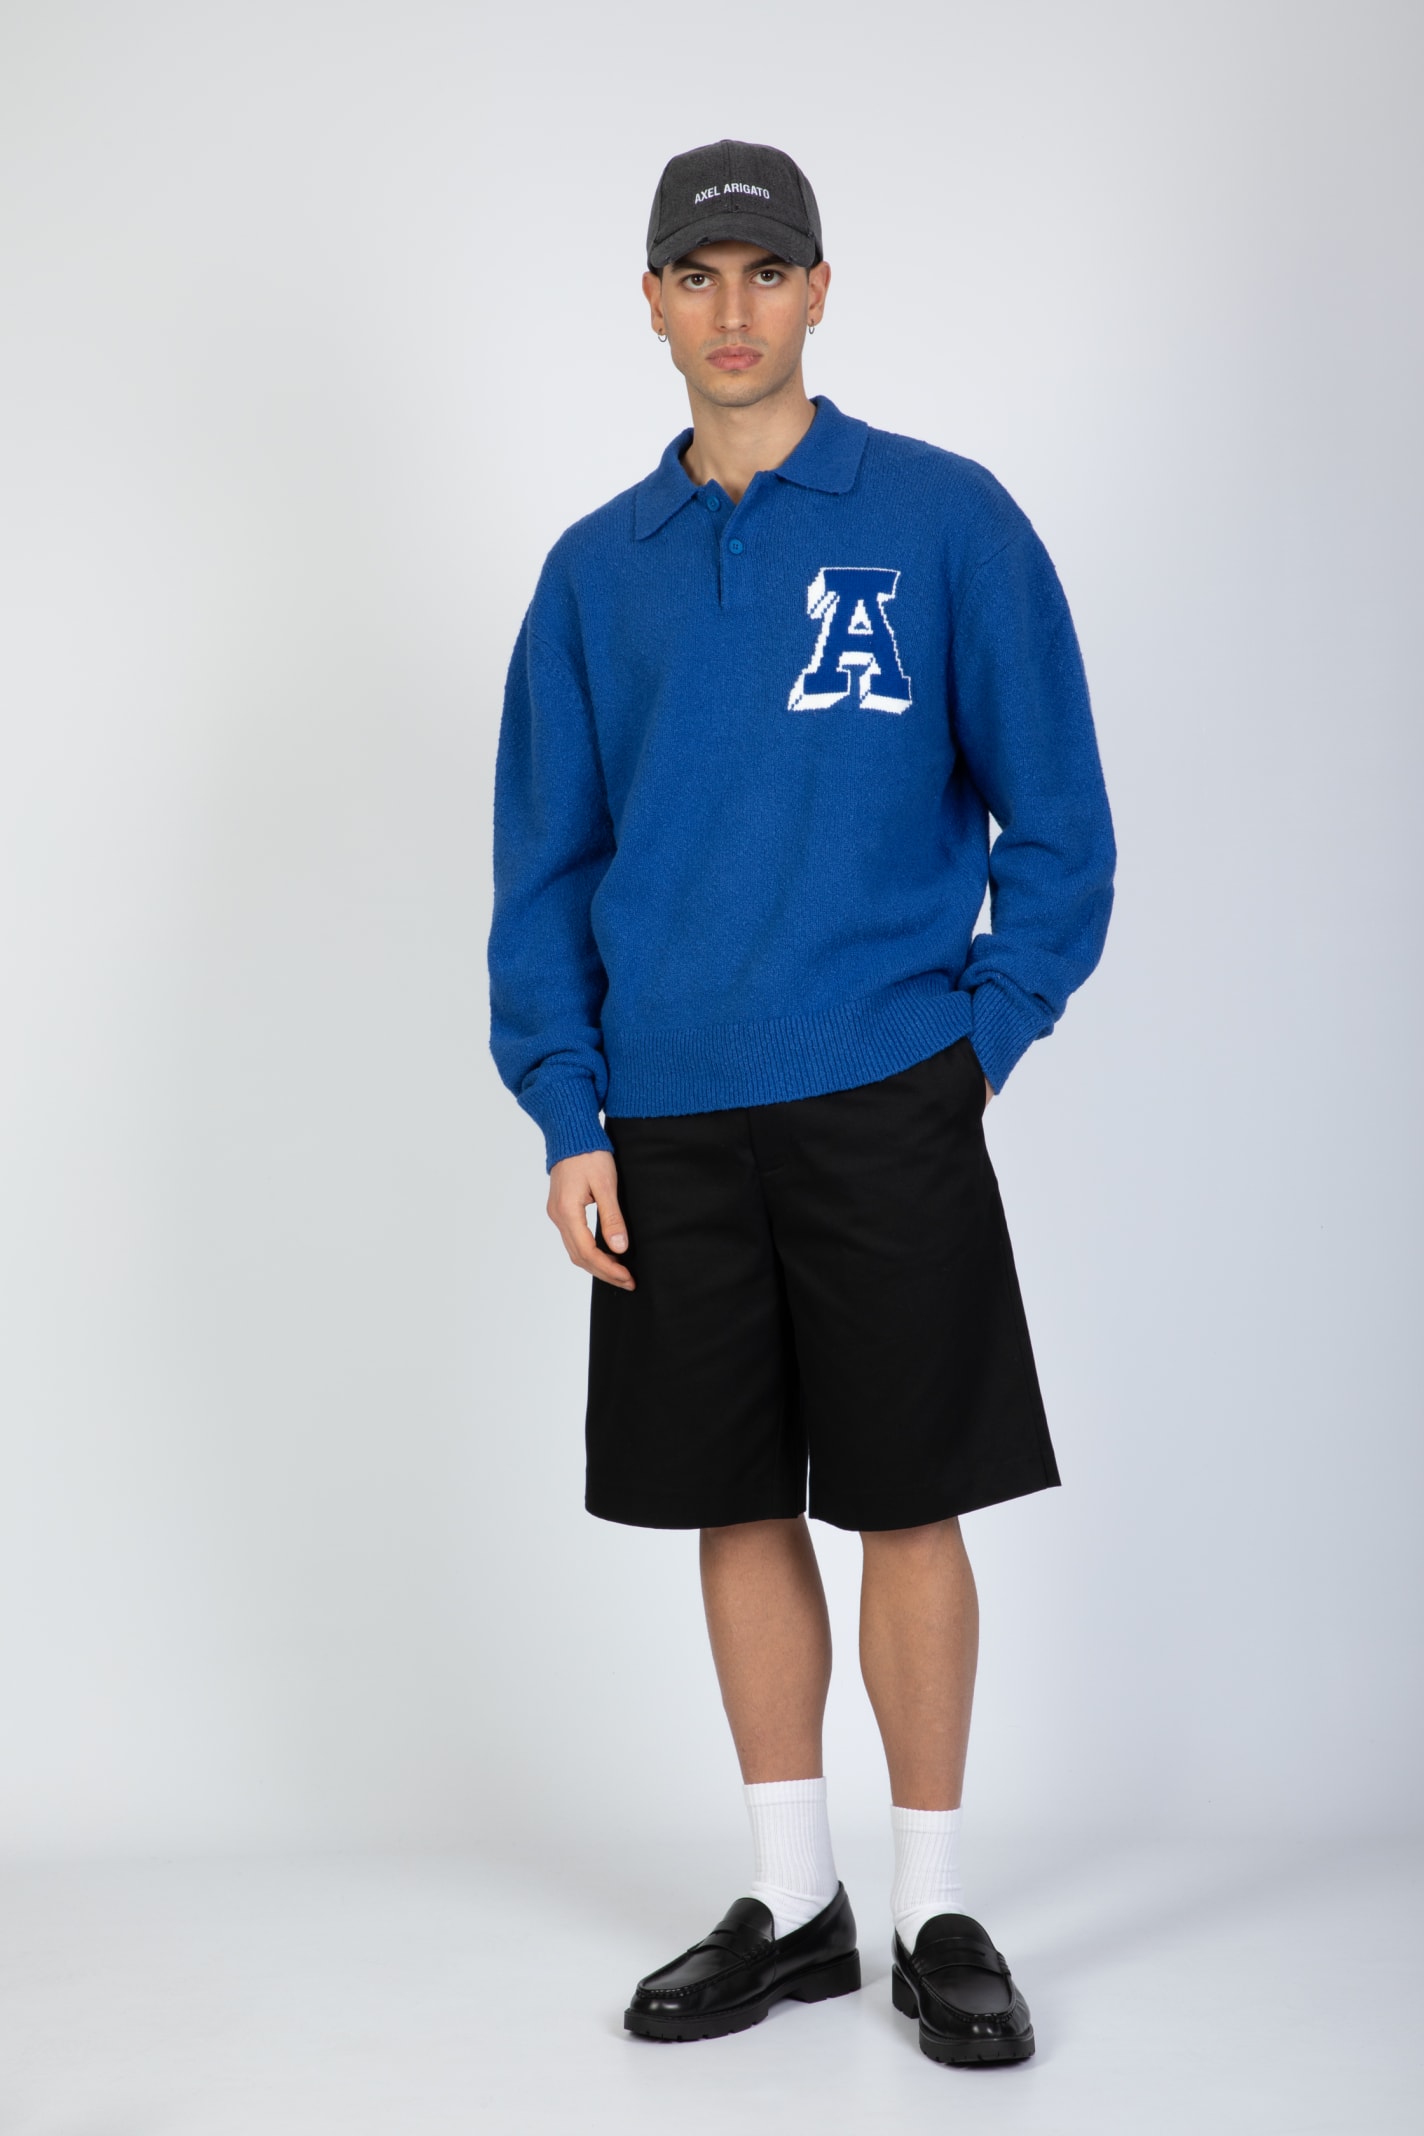 Shop Axel Arigato Team Polo Sweater Royal Blue Cotton Blend Polo Sweater - Team Polo Sweater